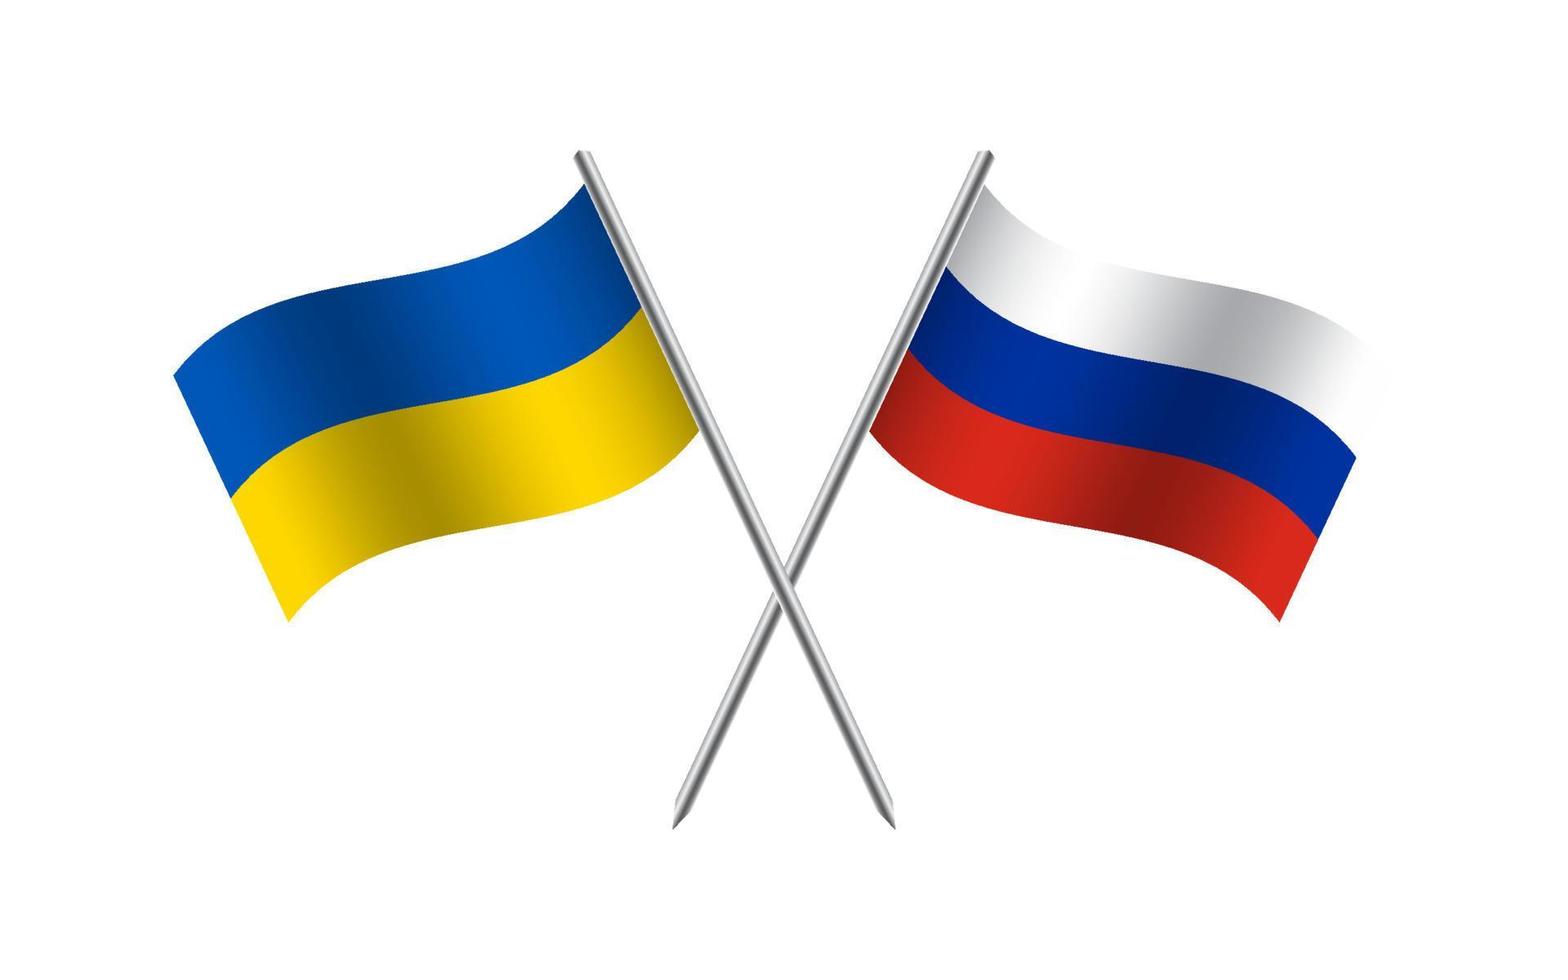 vliegend vlaggen van Oekraïne en Rusland. oekraïens en Russisch staat symbool. oekraïens symbool van onafhankelijkheid en vrijheid. vector illustratie